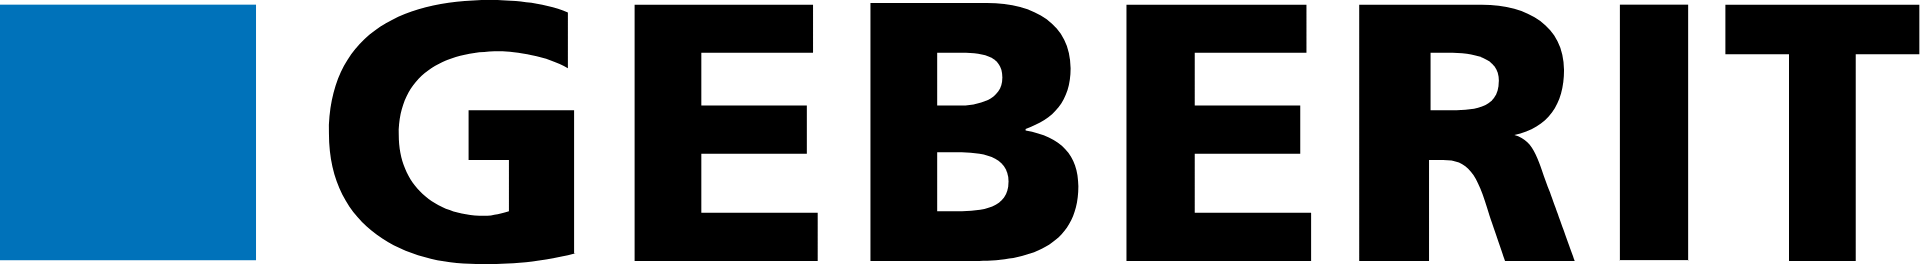 Geberit logo large (transparent PNG)